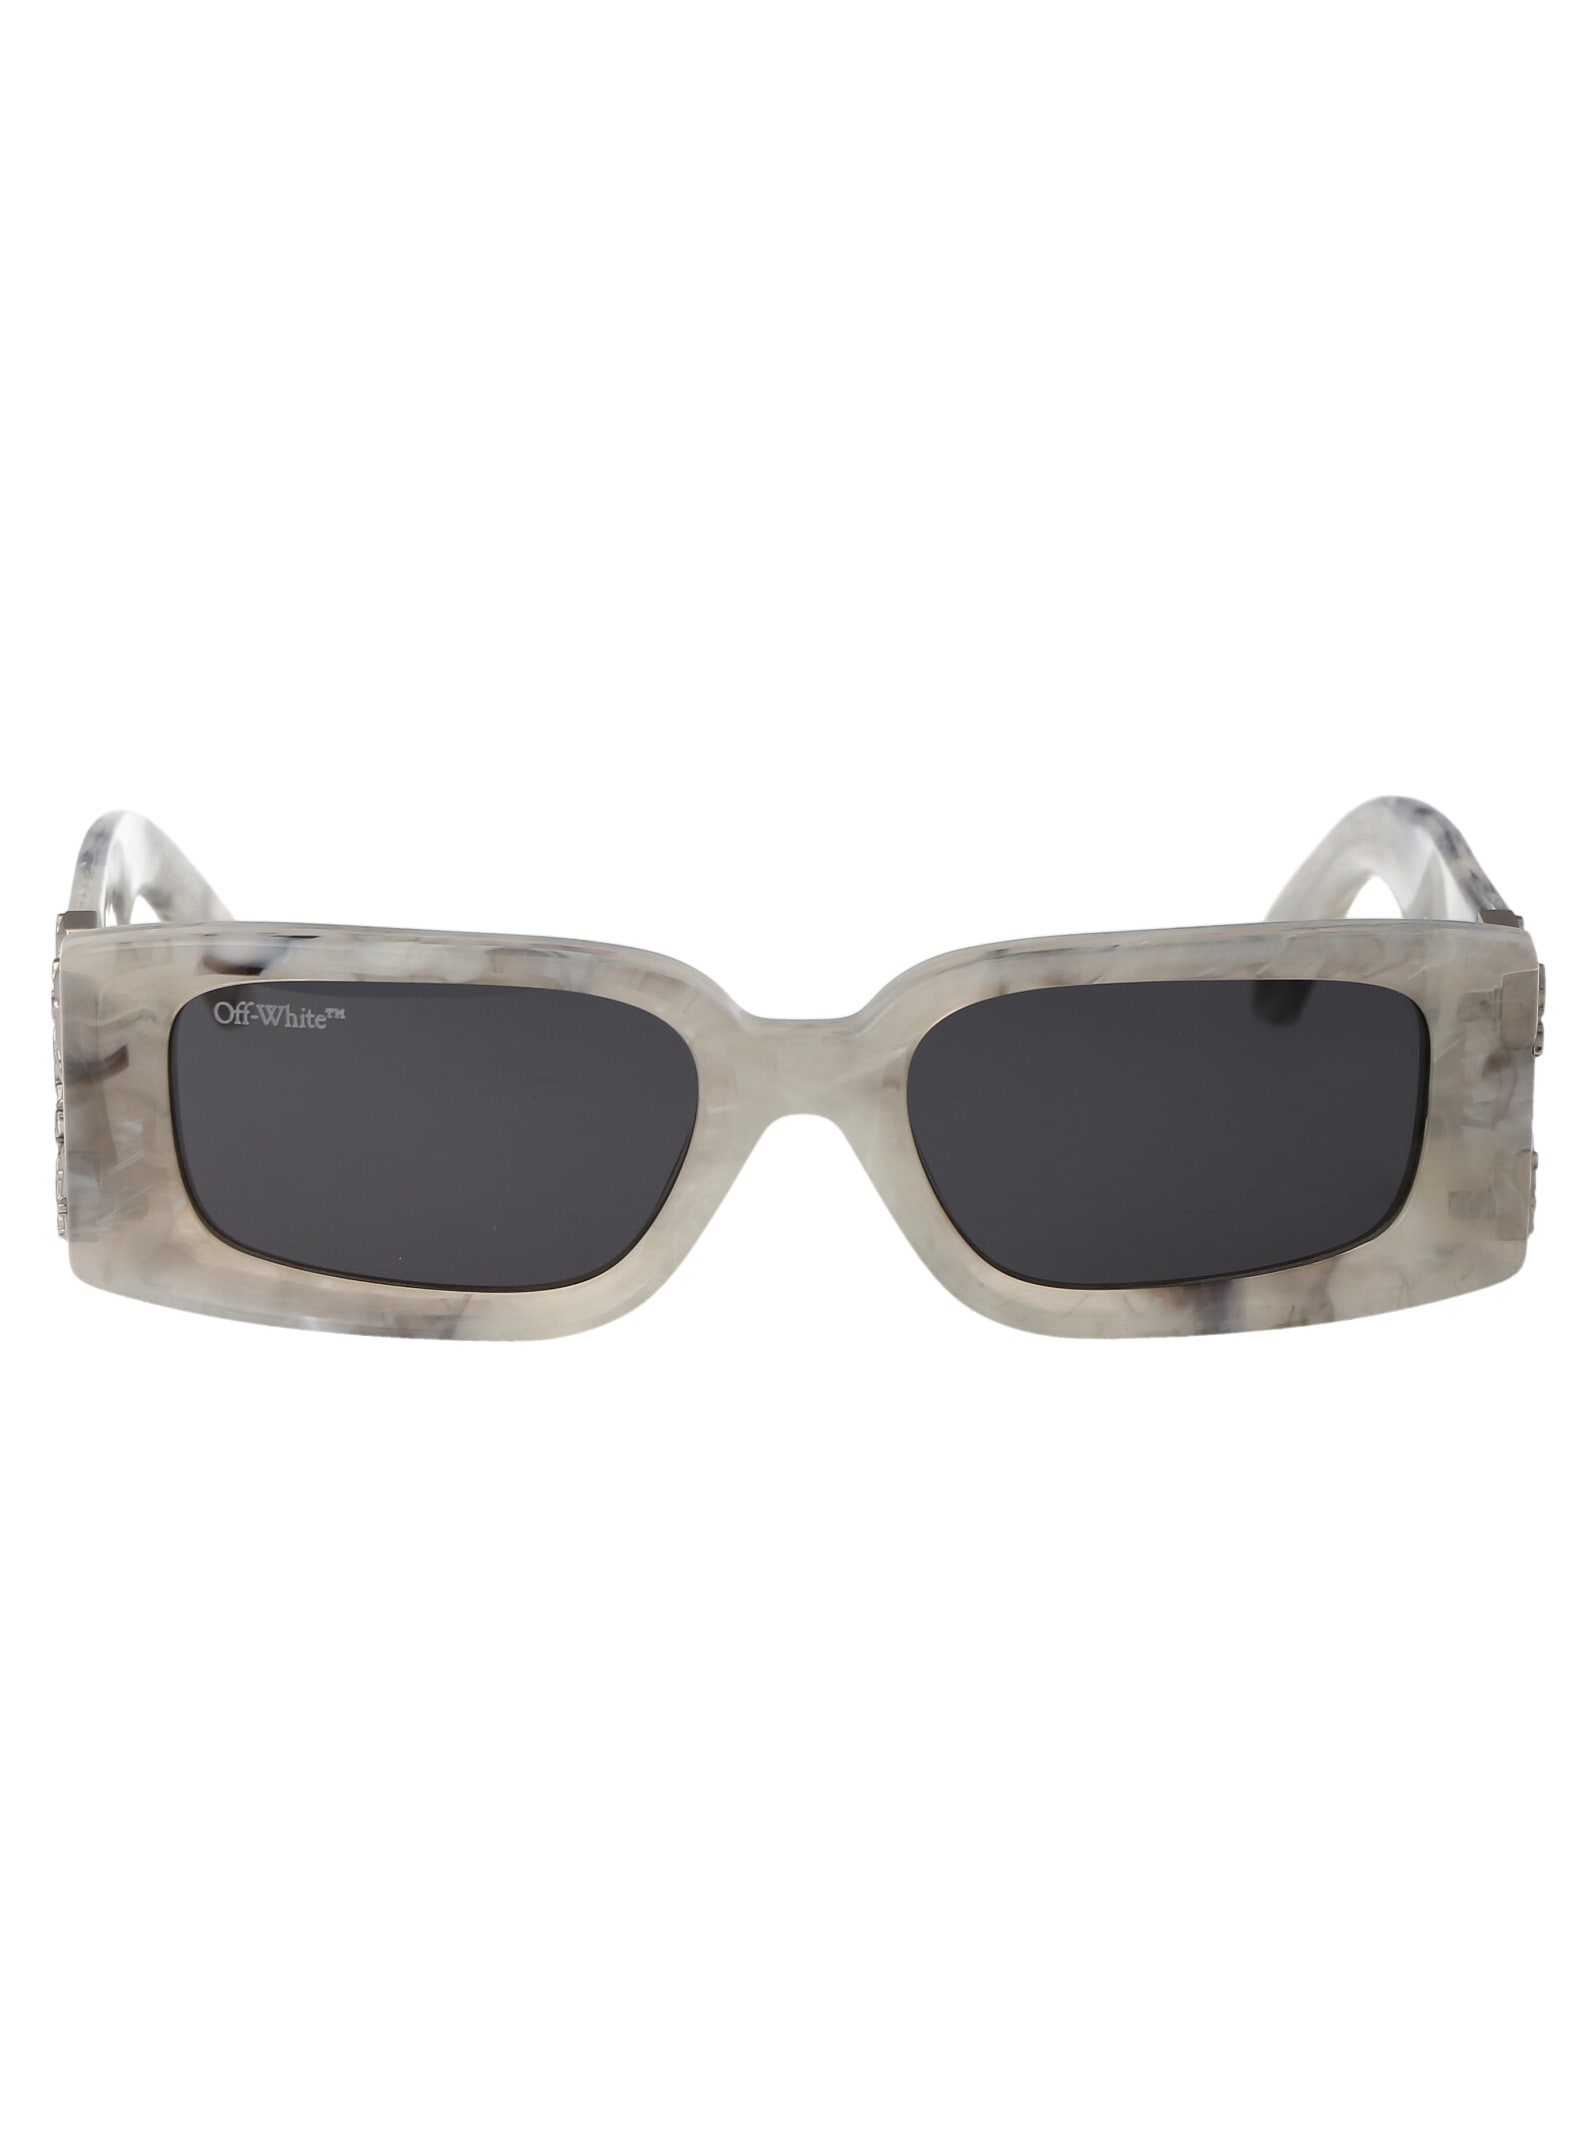 Off-white Roma Sunglasses In Gray